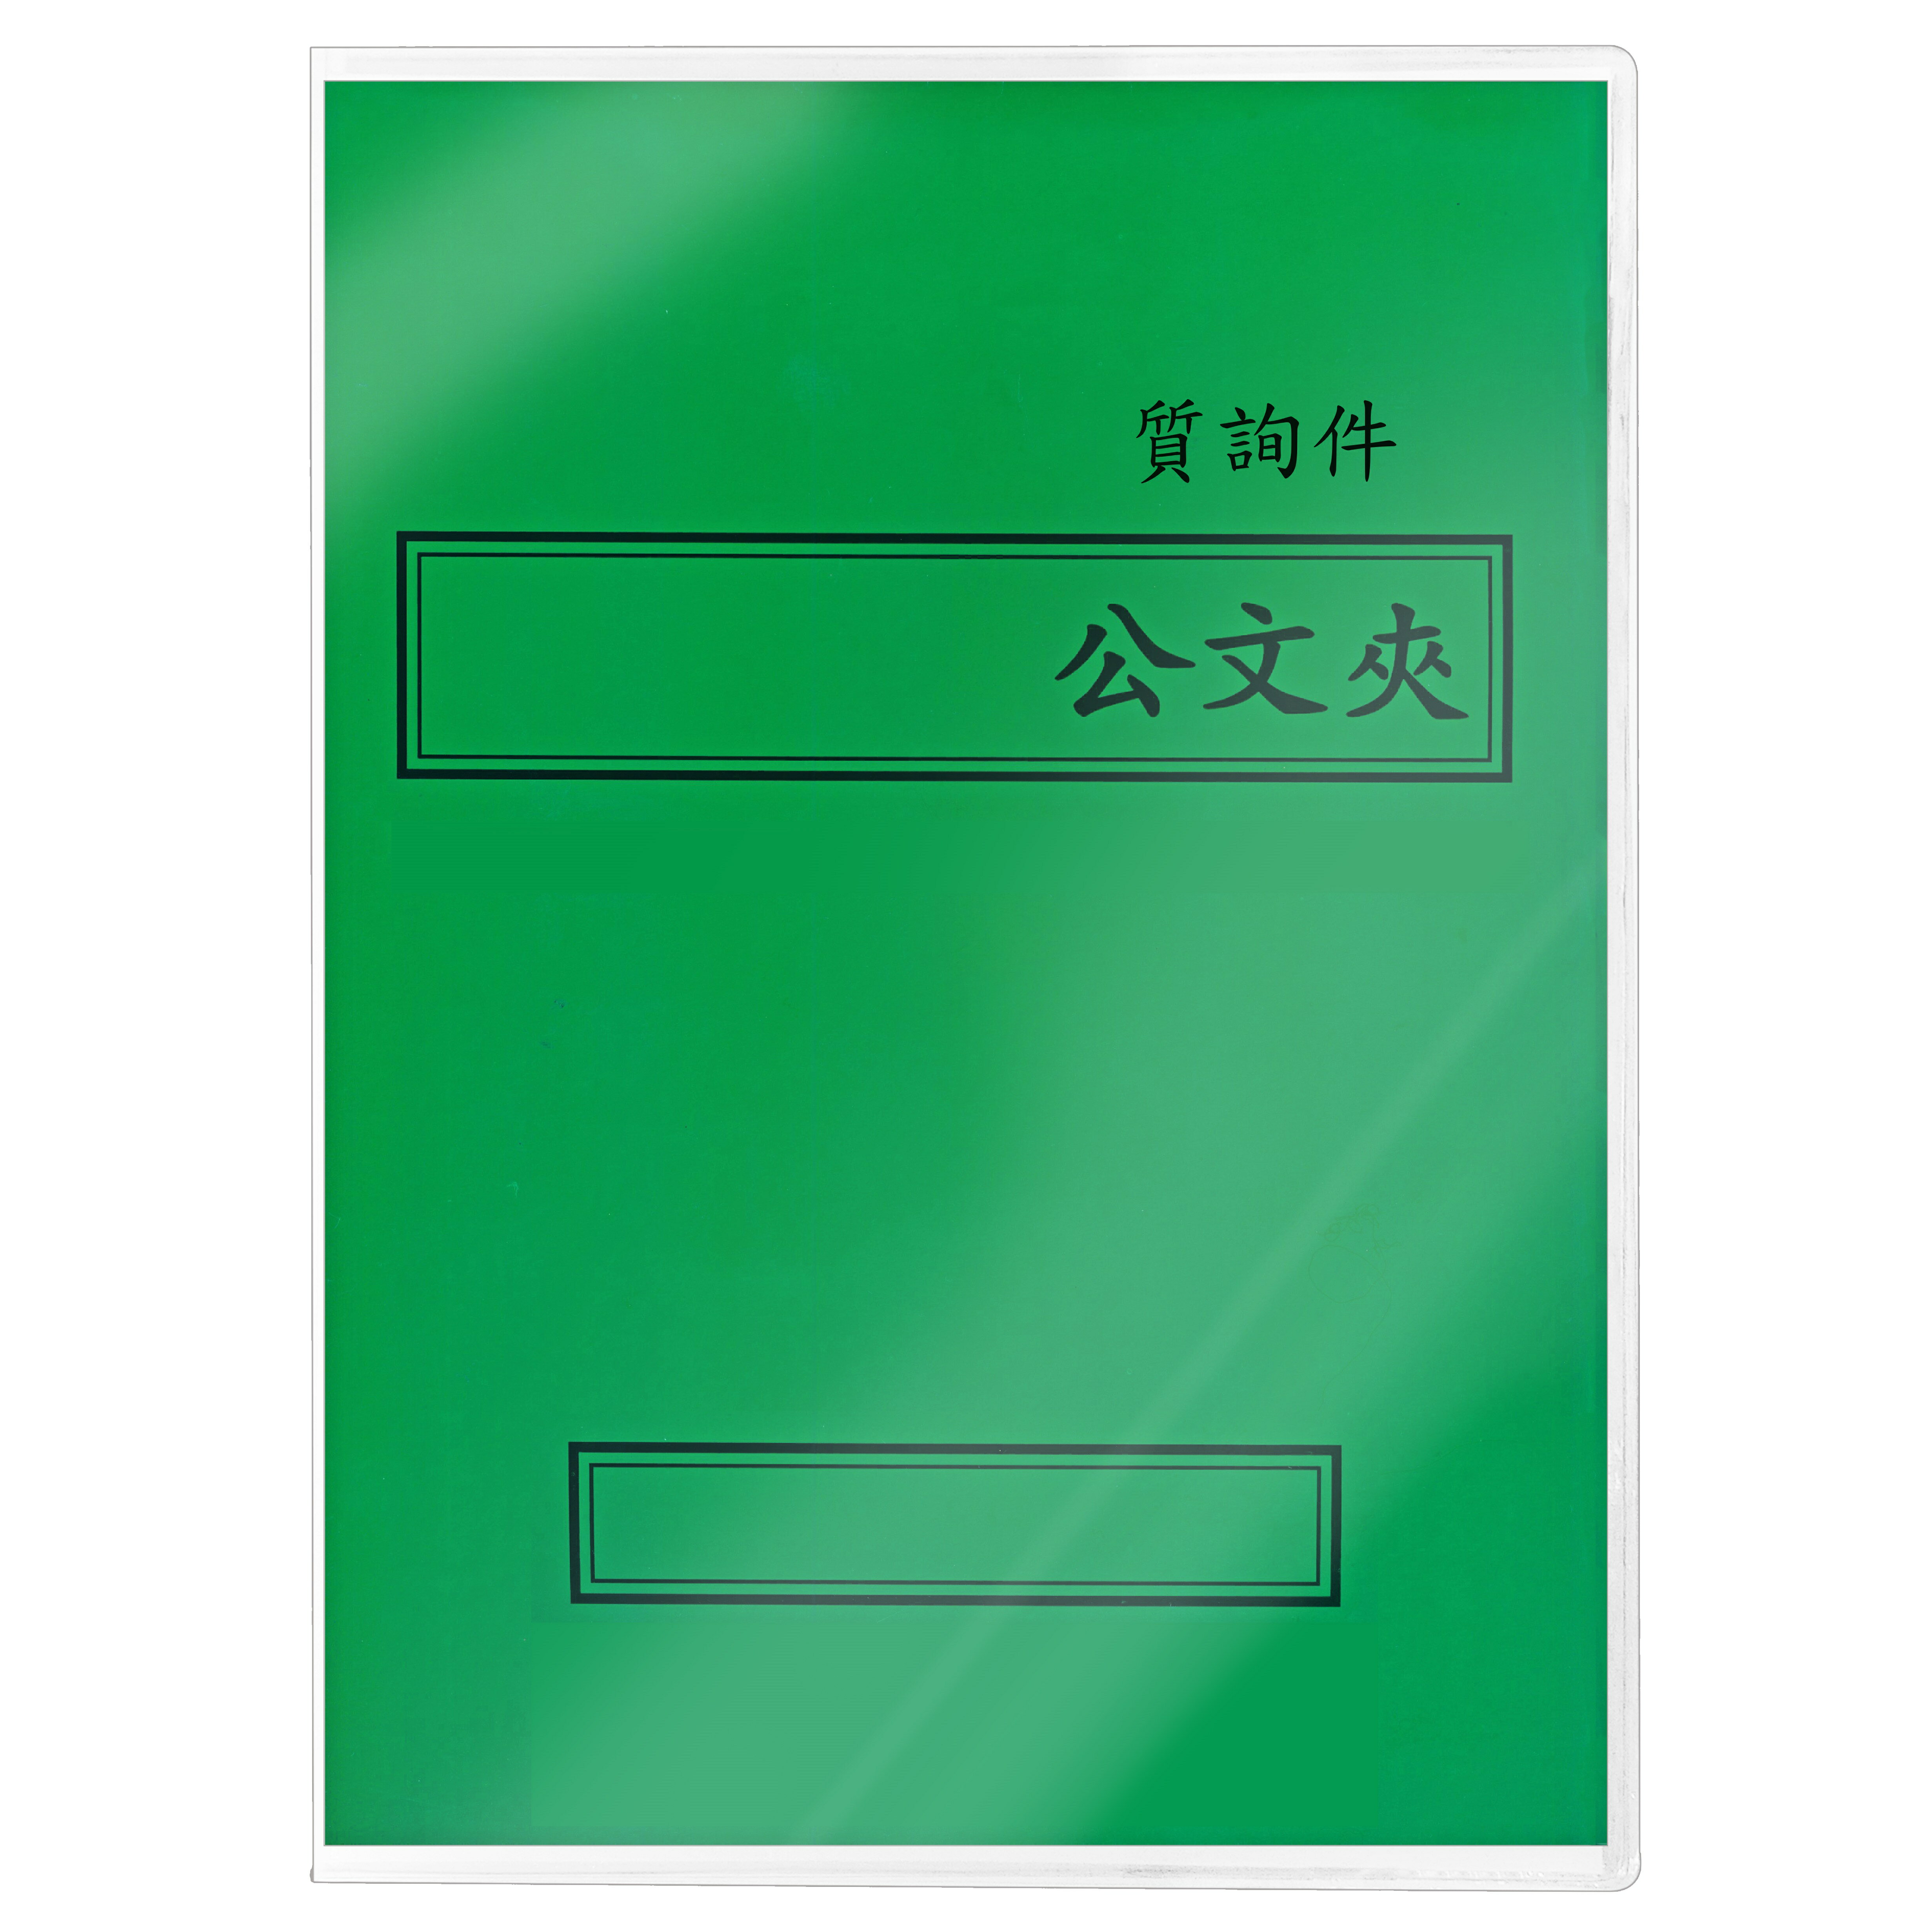 【文具通】紙質 西式 橫式 綠色 答覆議員質詢案件 卷宗紙已折好 並已套上保護套 整套販售 T1010067